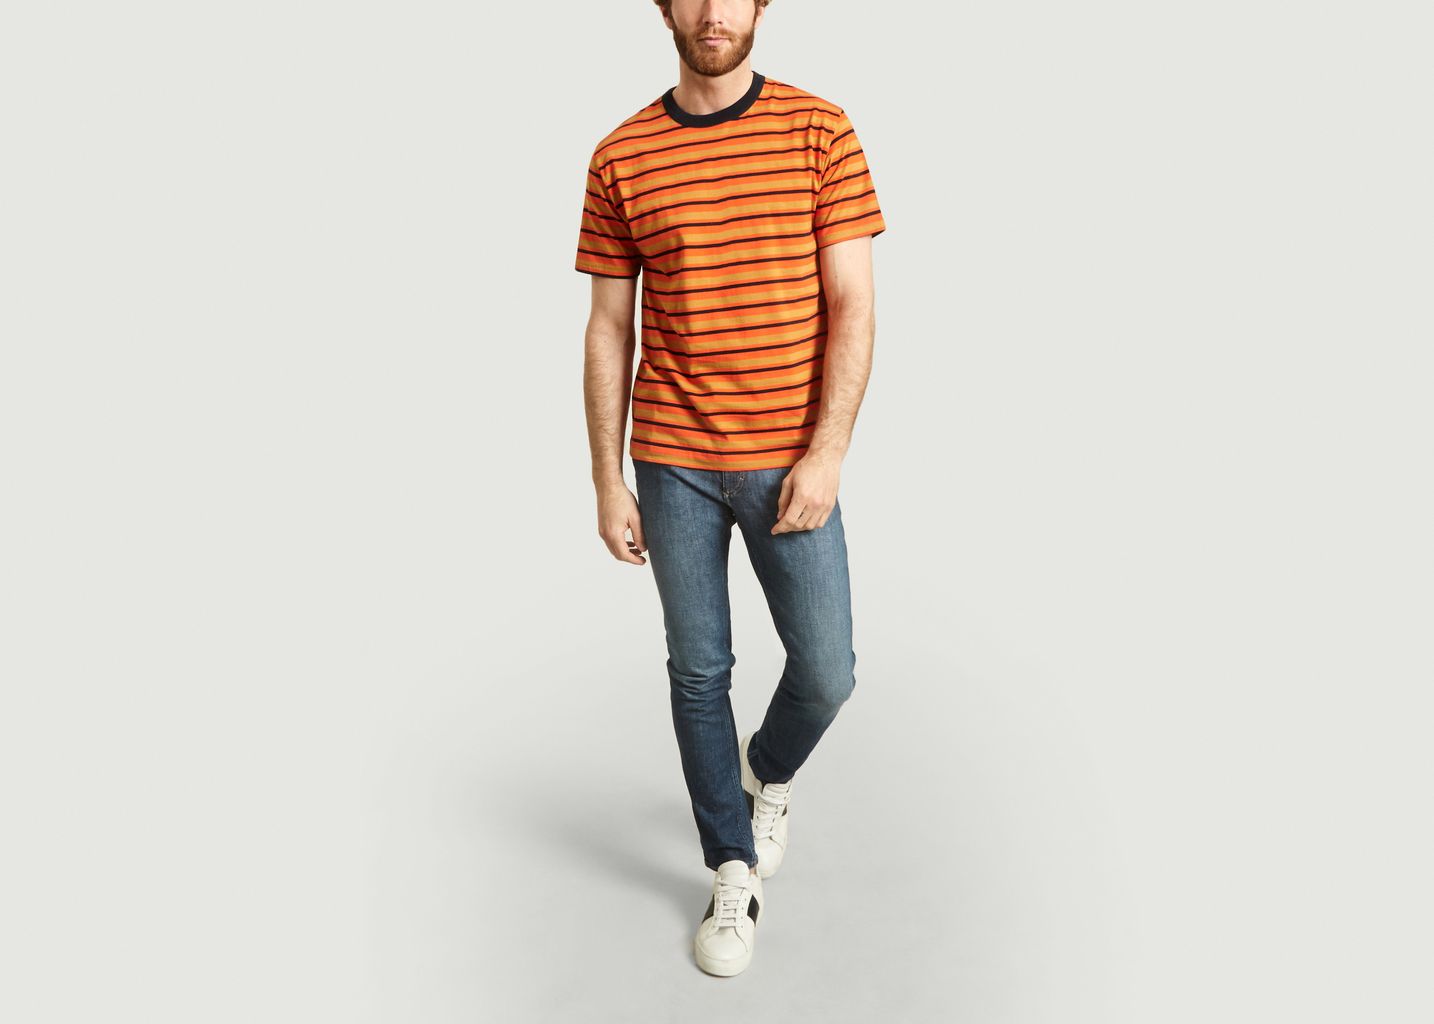 Mate t-shirt printed stripes  - Loreak Mendian